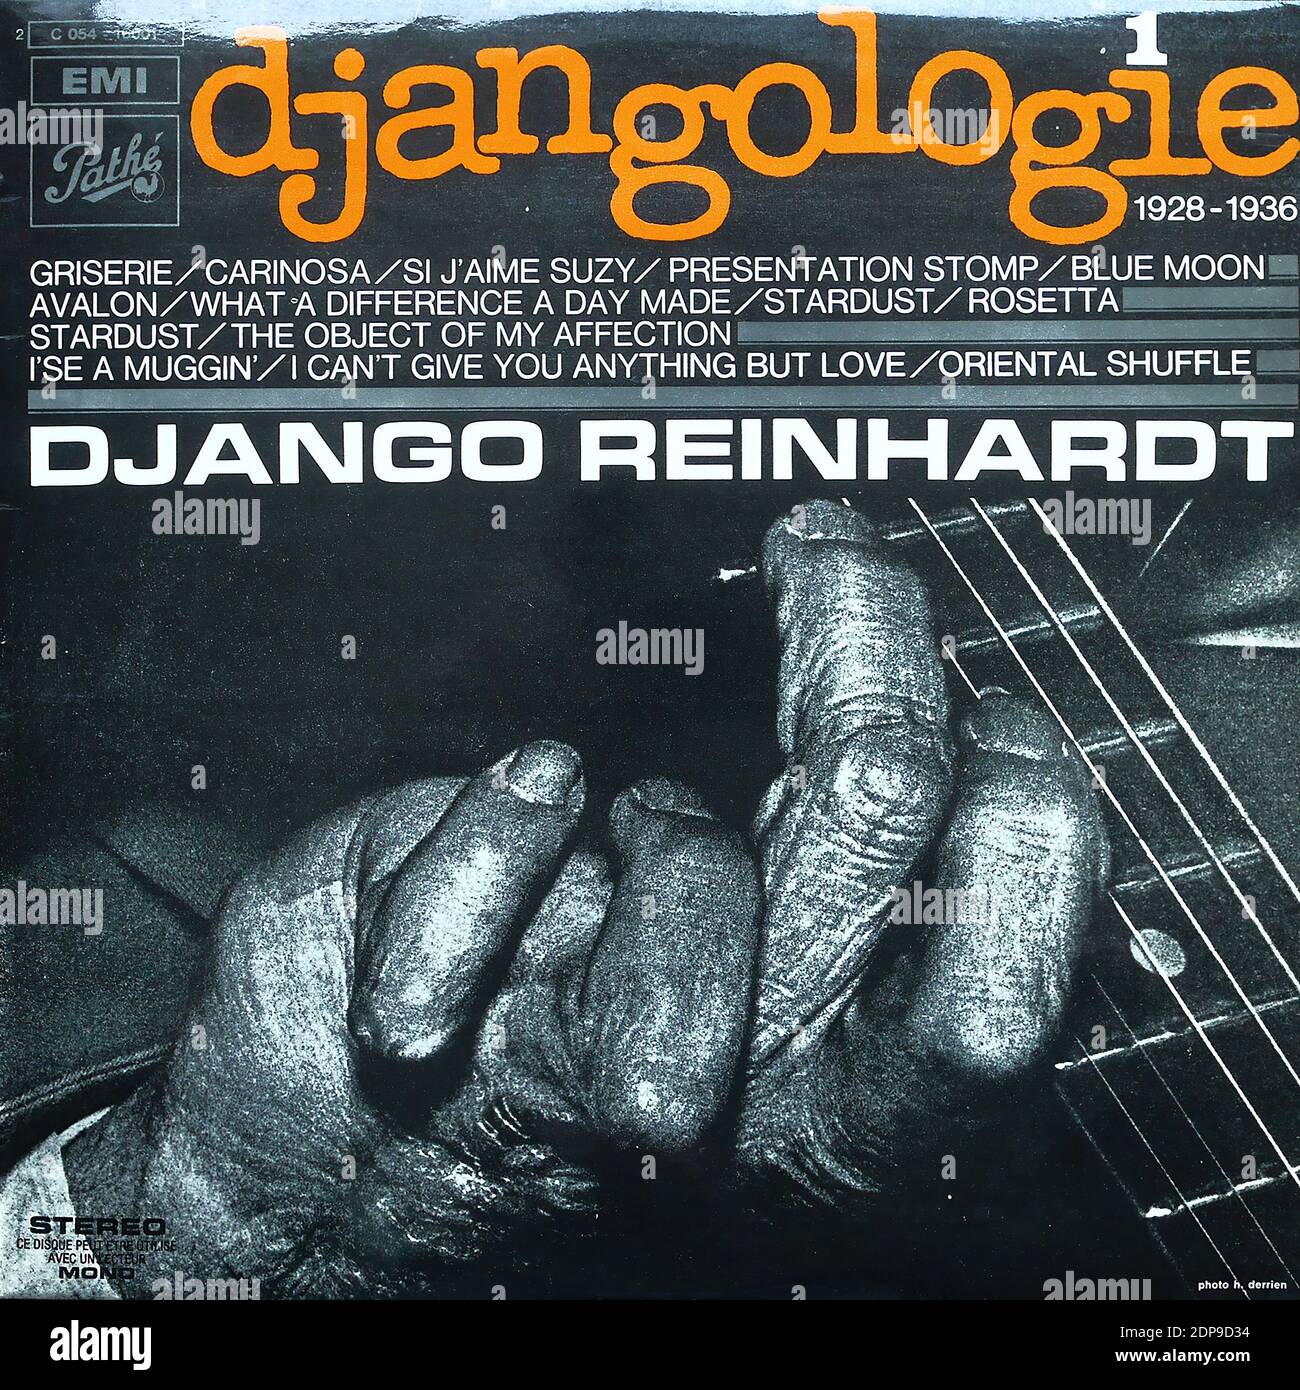 Djangologie - Griserie e.o. - Jean Vaissade Accordéon, Django Reinhardt Banjo, EMI 2 C 054-16001, 1928-1936, vol.1 de 20 - couverture d'album en vinyle vintage Banque D'Images